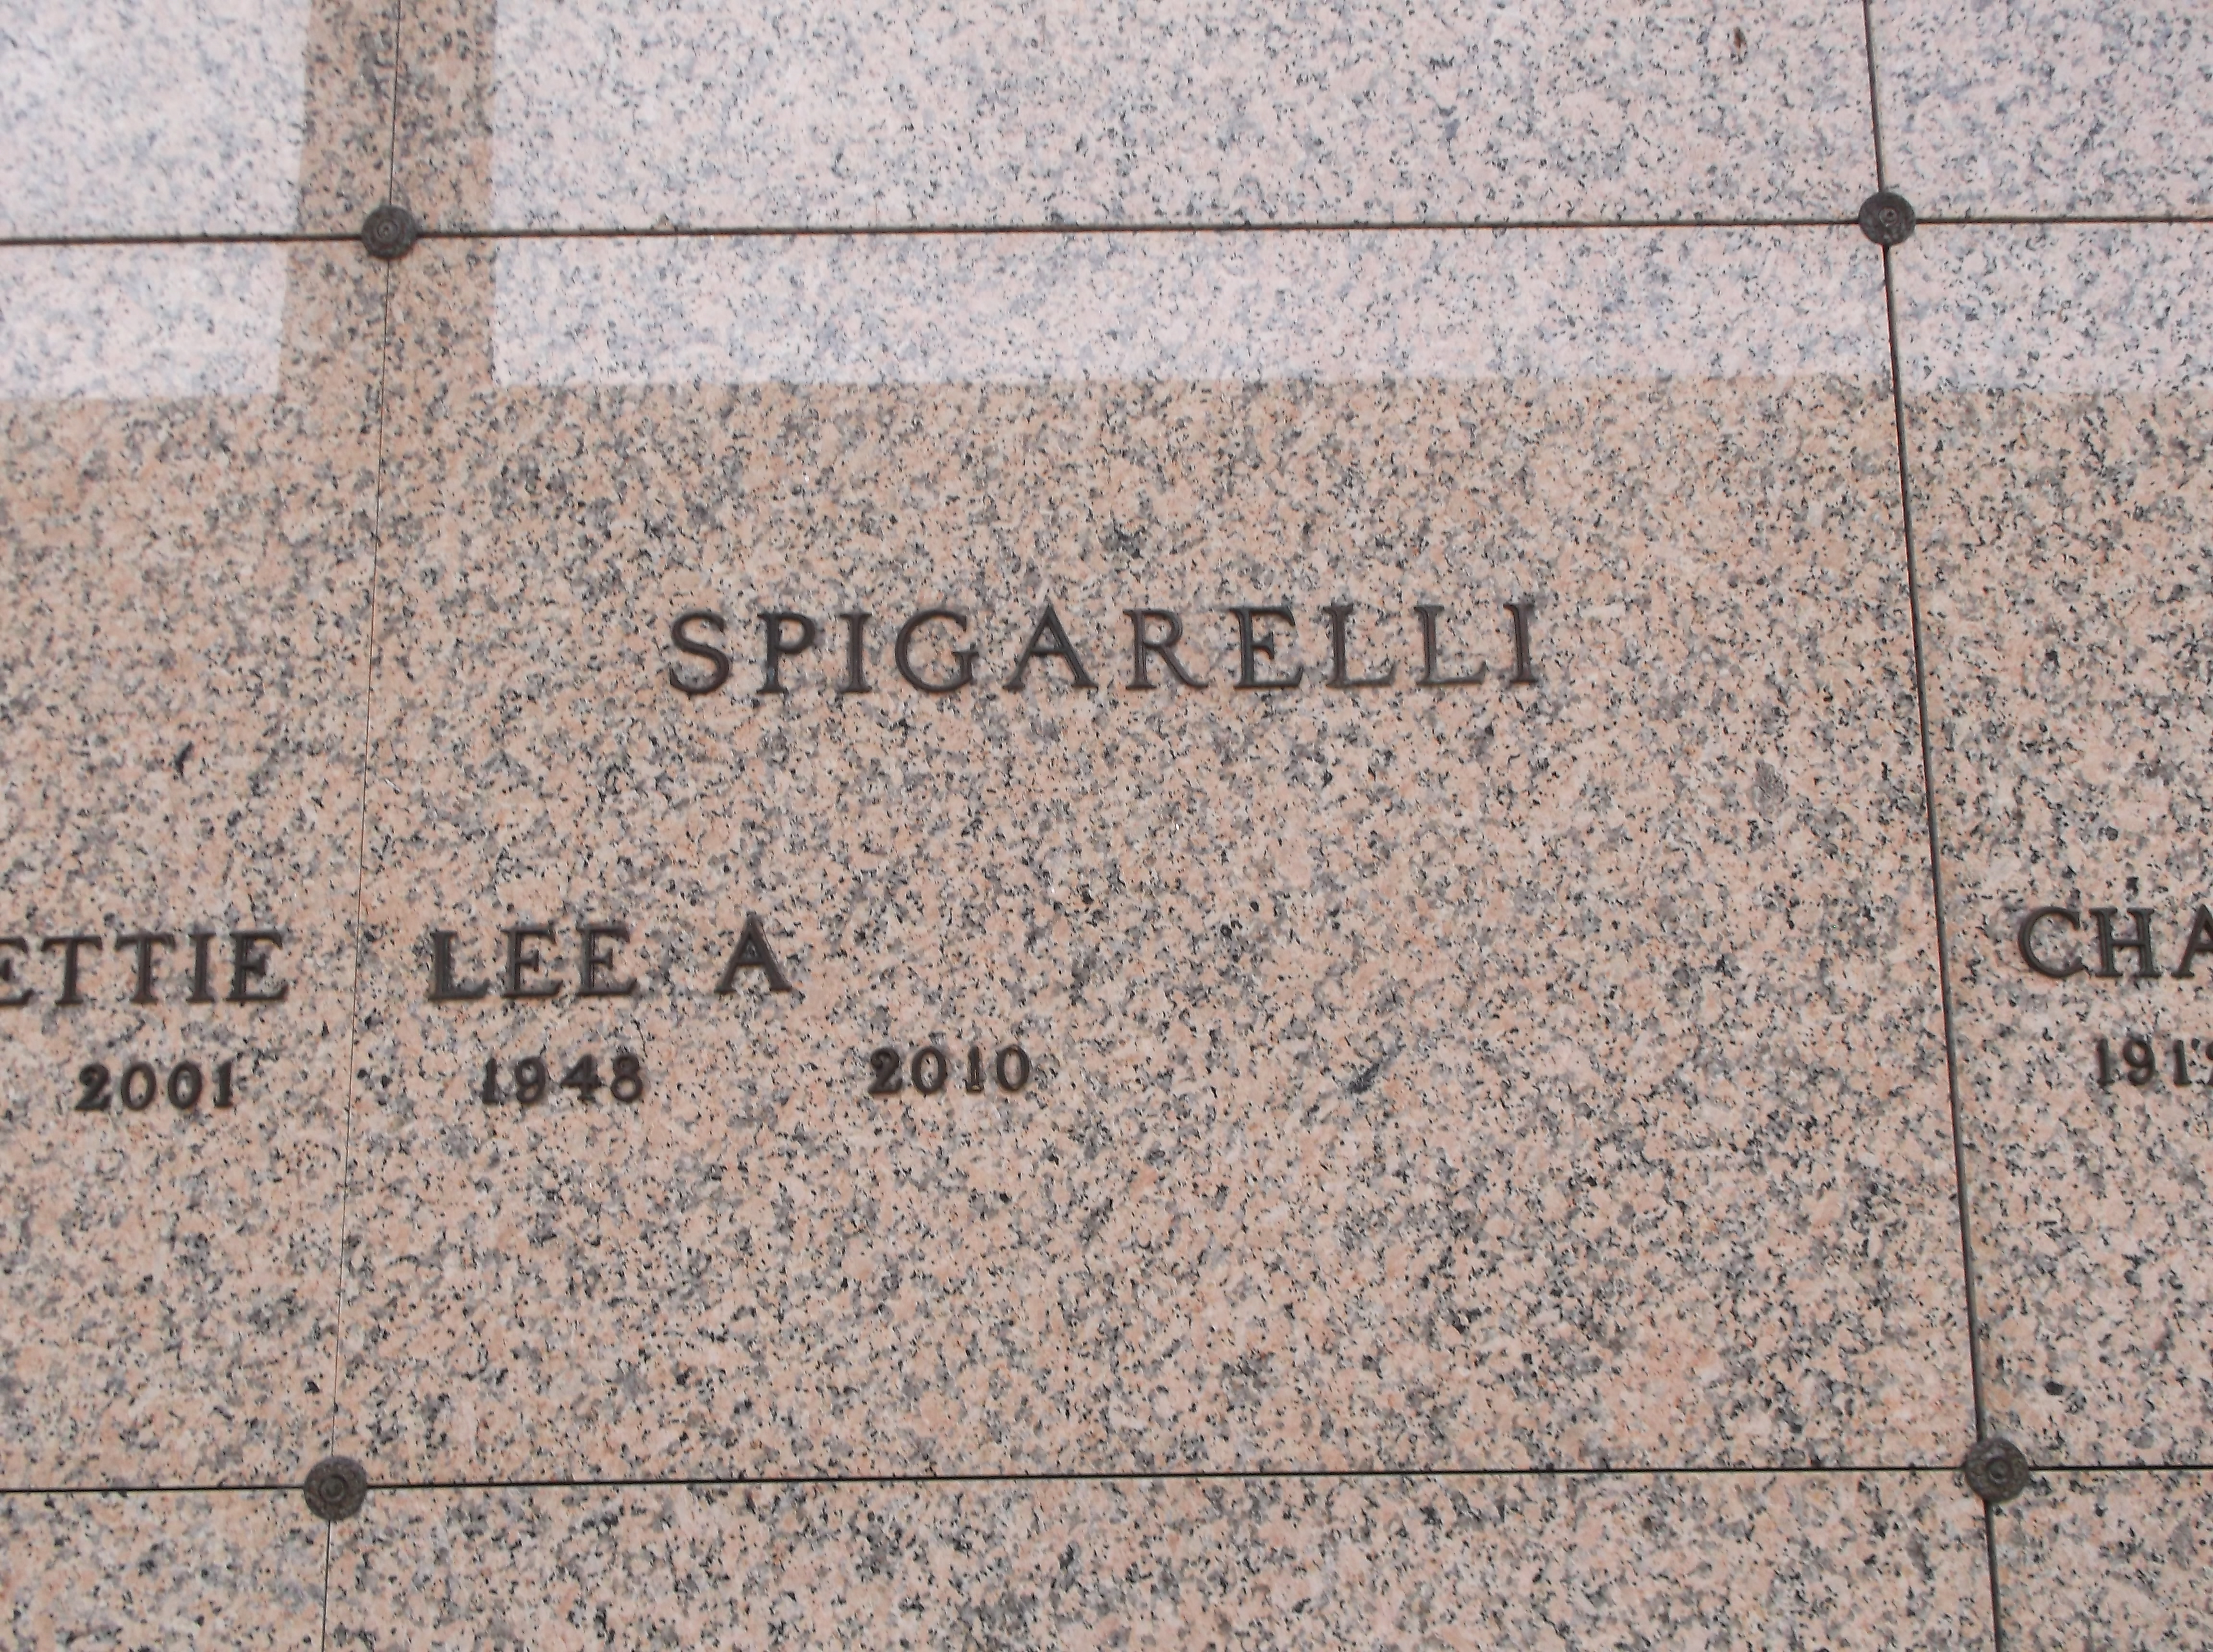 Lee A Spigarelli